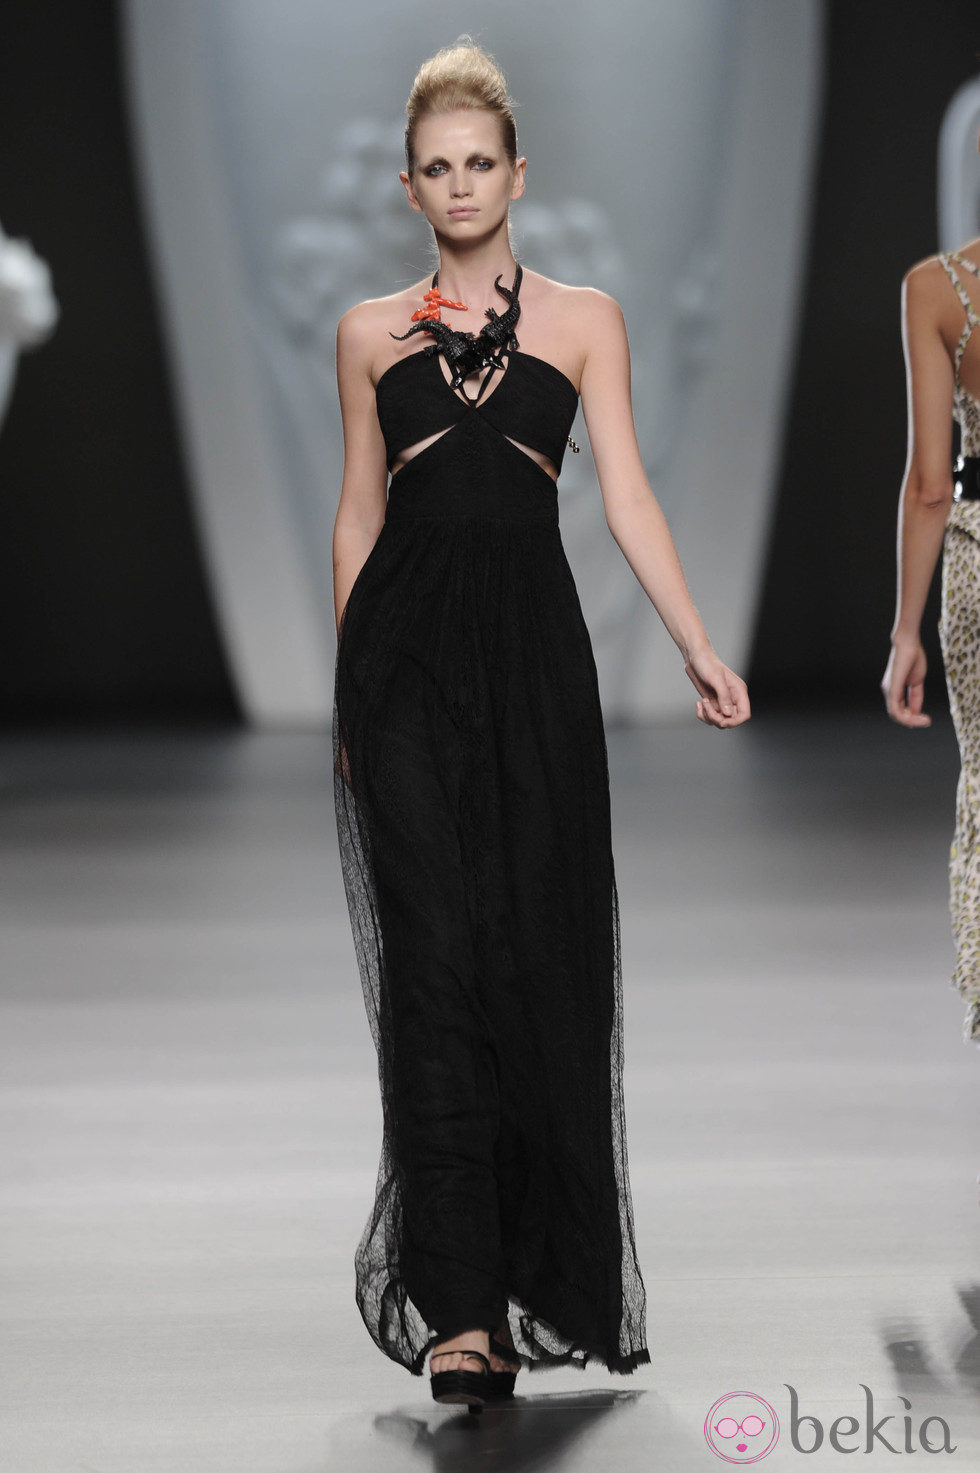 Vestido largo negro de la colección primavera-verano 2013 de Ana Locking